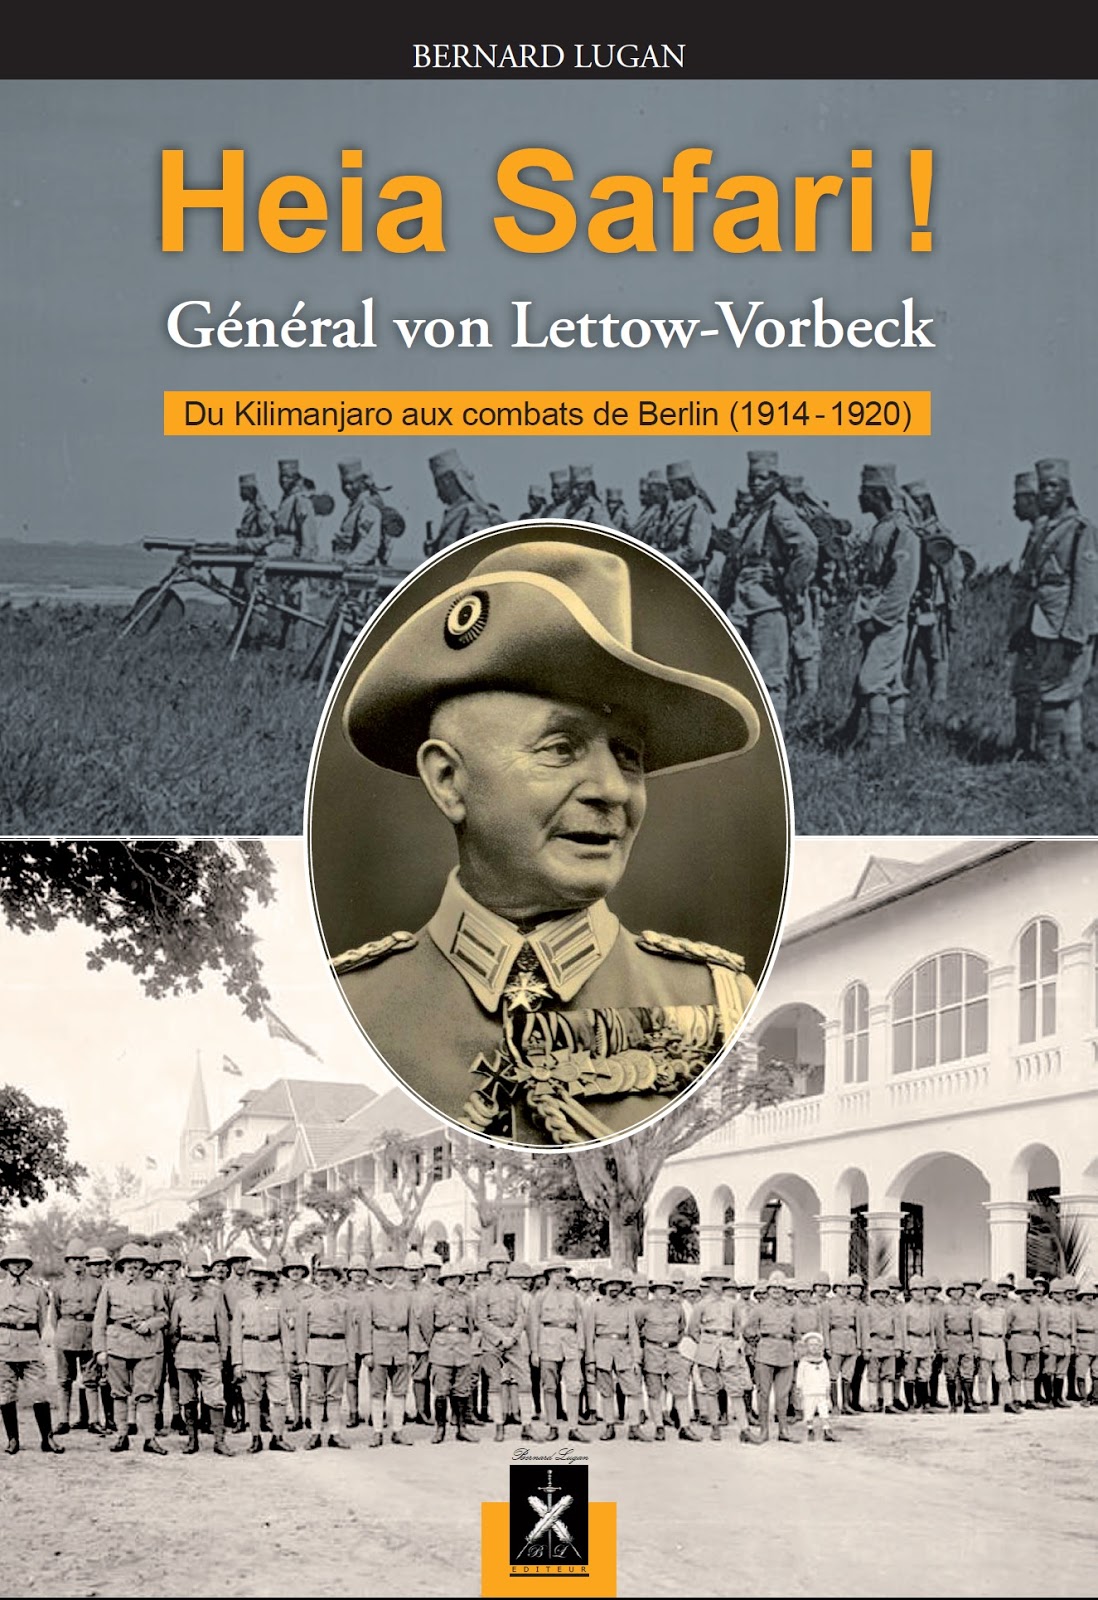 Von Lettow-Vorbeck